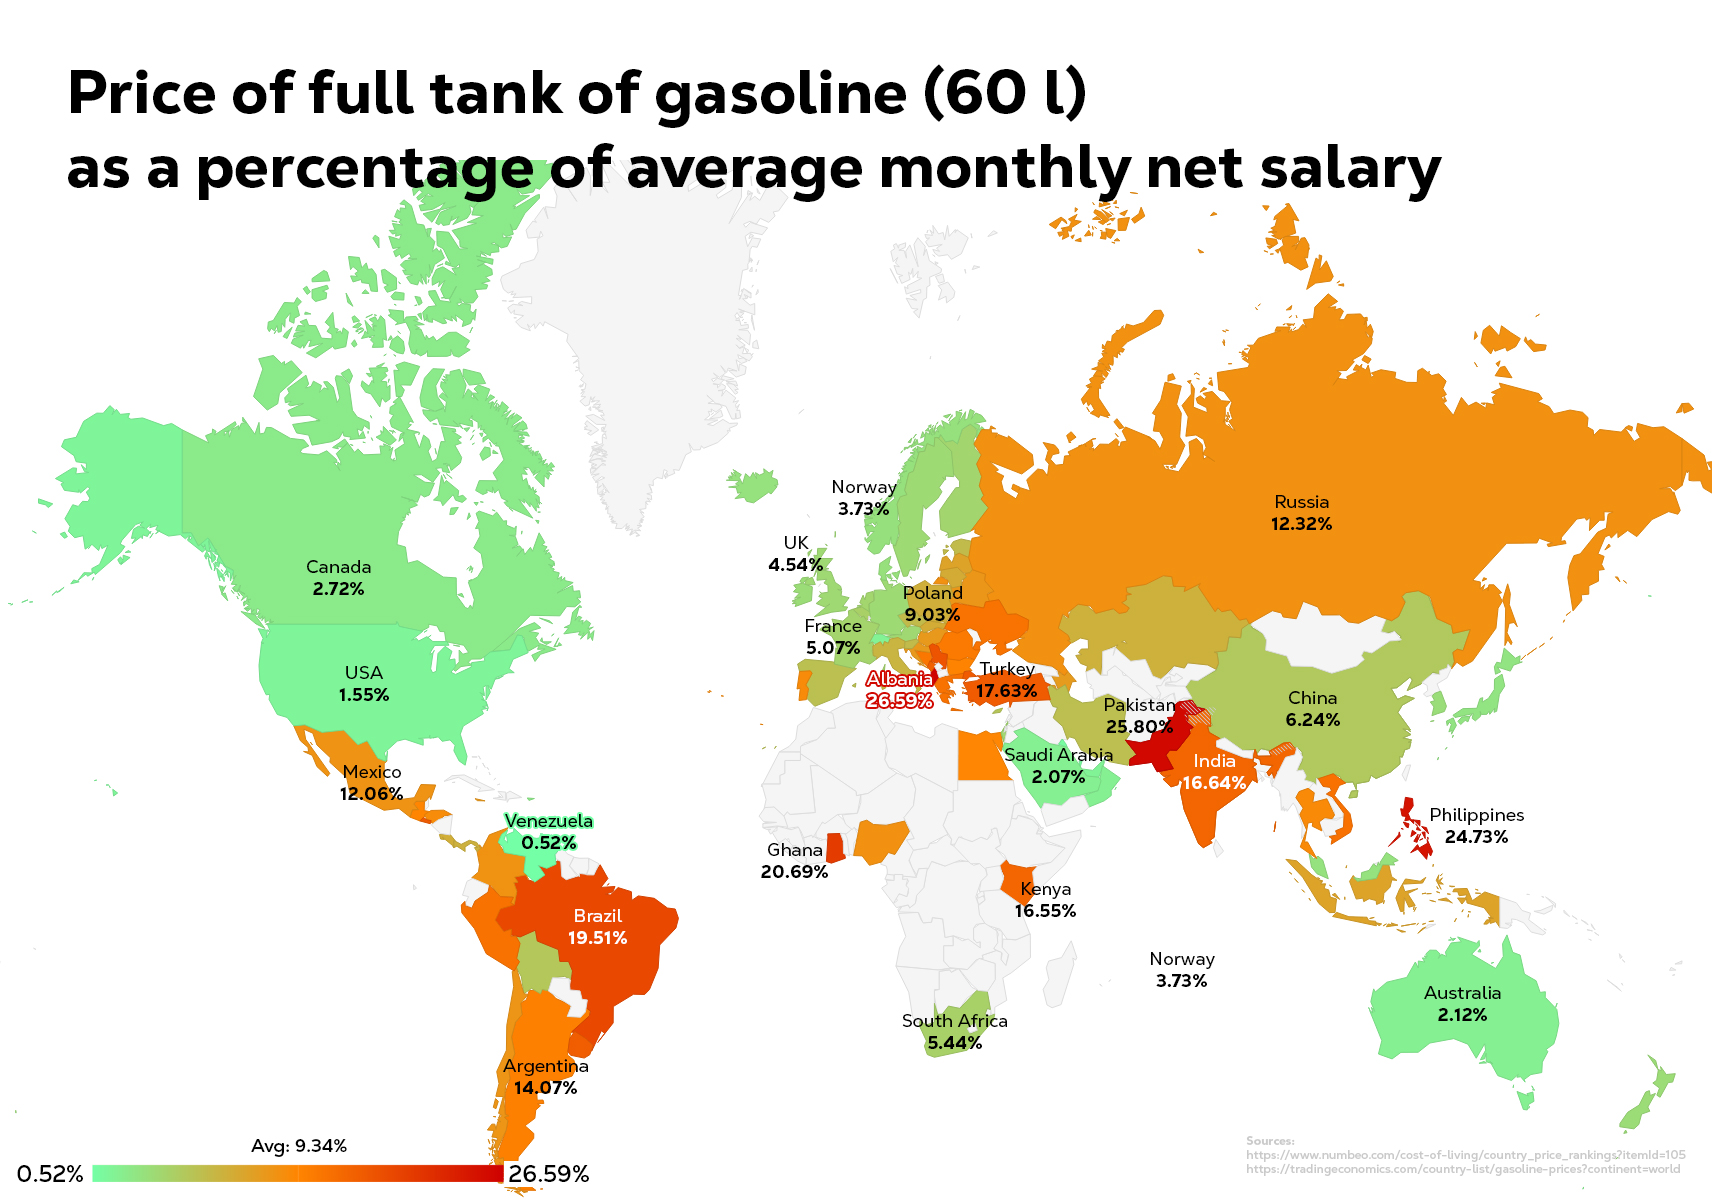 Preço do tanque cheio de gasolina como porcentagem do salário líquido mensal médio em todo o mundo. Quanto mais avermelhado, pior. Brasil só perde para Albania, Gana, Paquistão e Filipinas.